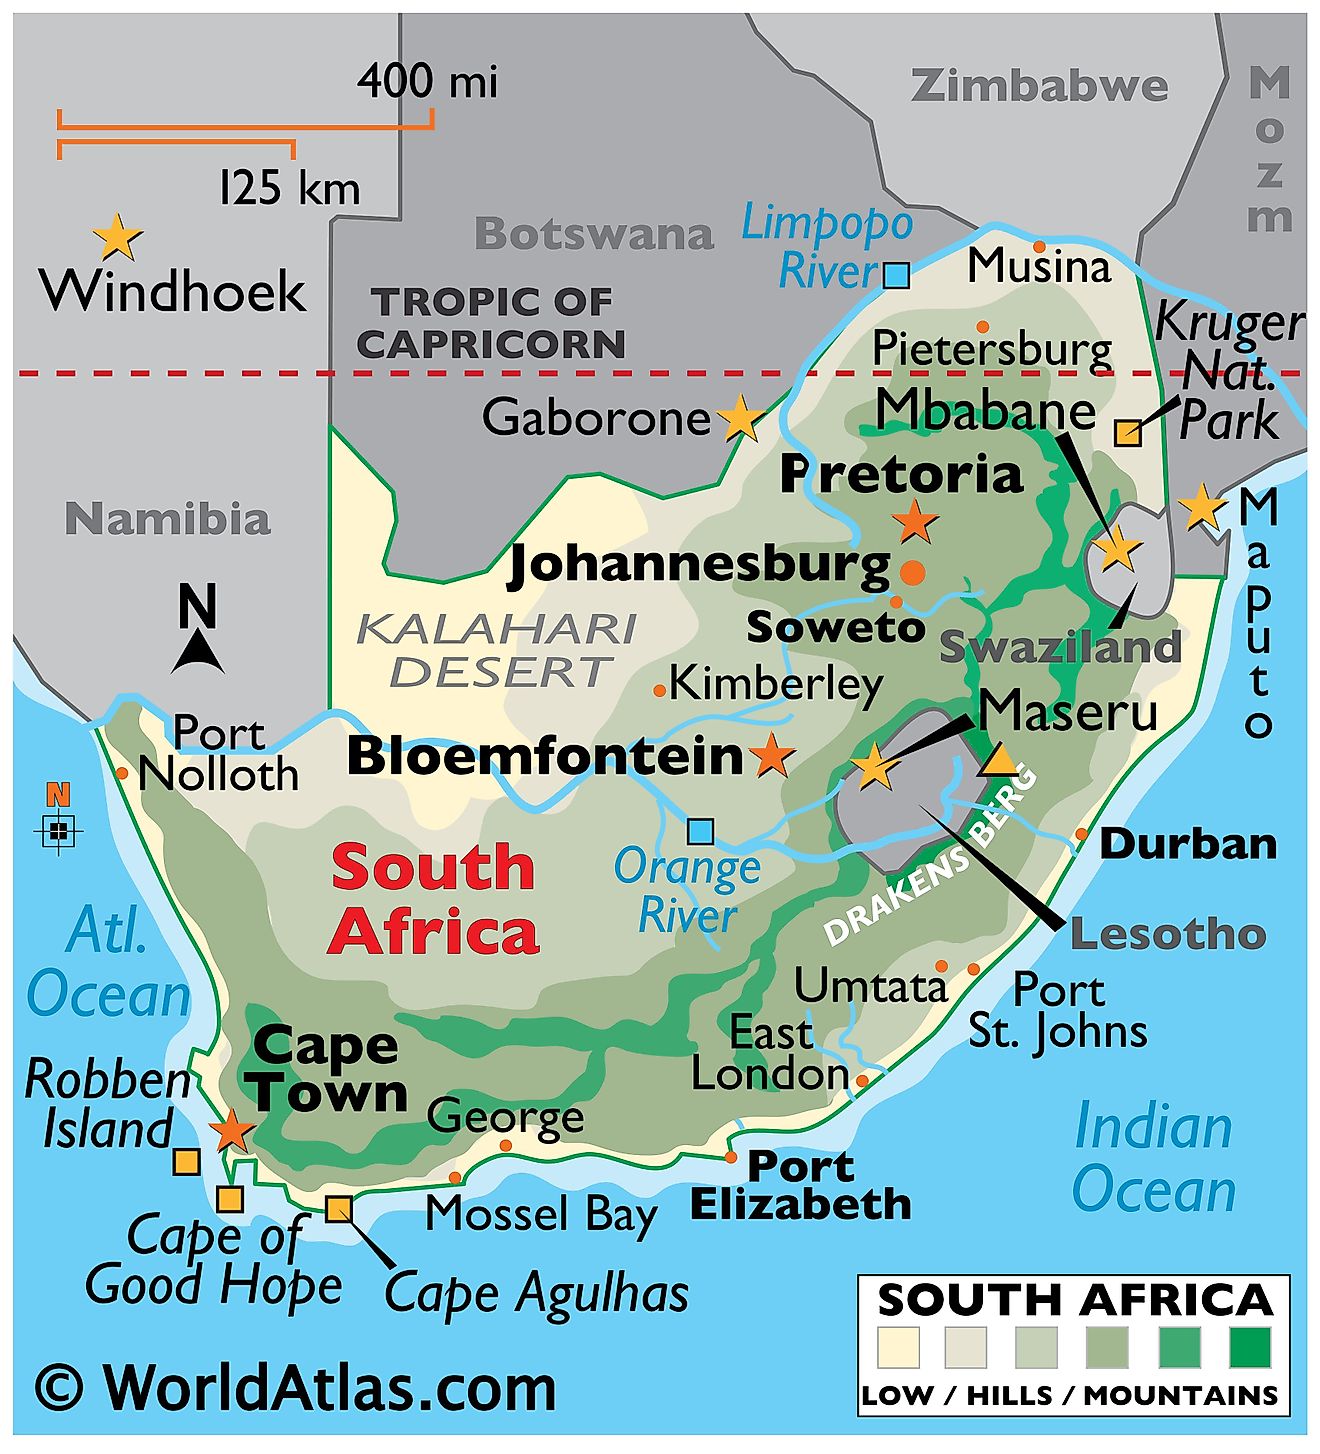 Mapa físico de Sudáfrica con límites estatales. Muestra las características físicas de Sudáfrica, incluidos el relieve, las cadenas montañosas, los ríos, las islas y las principales ciudades.